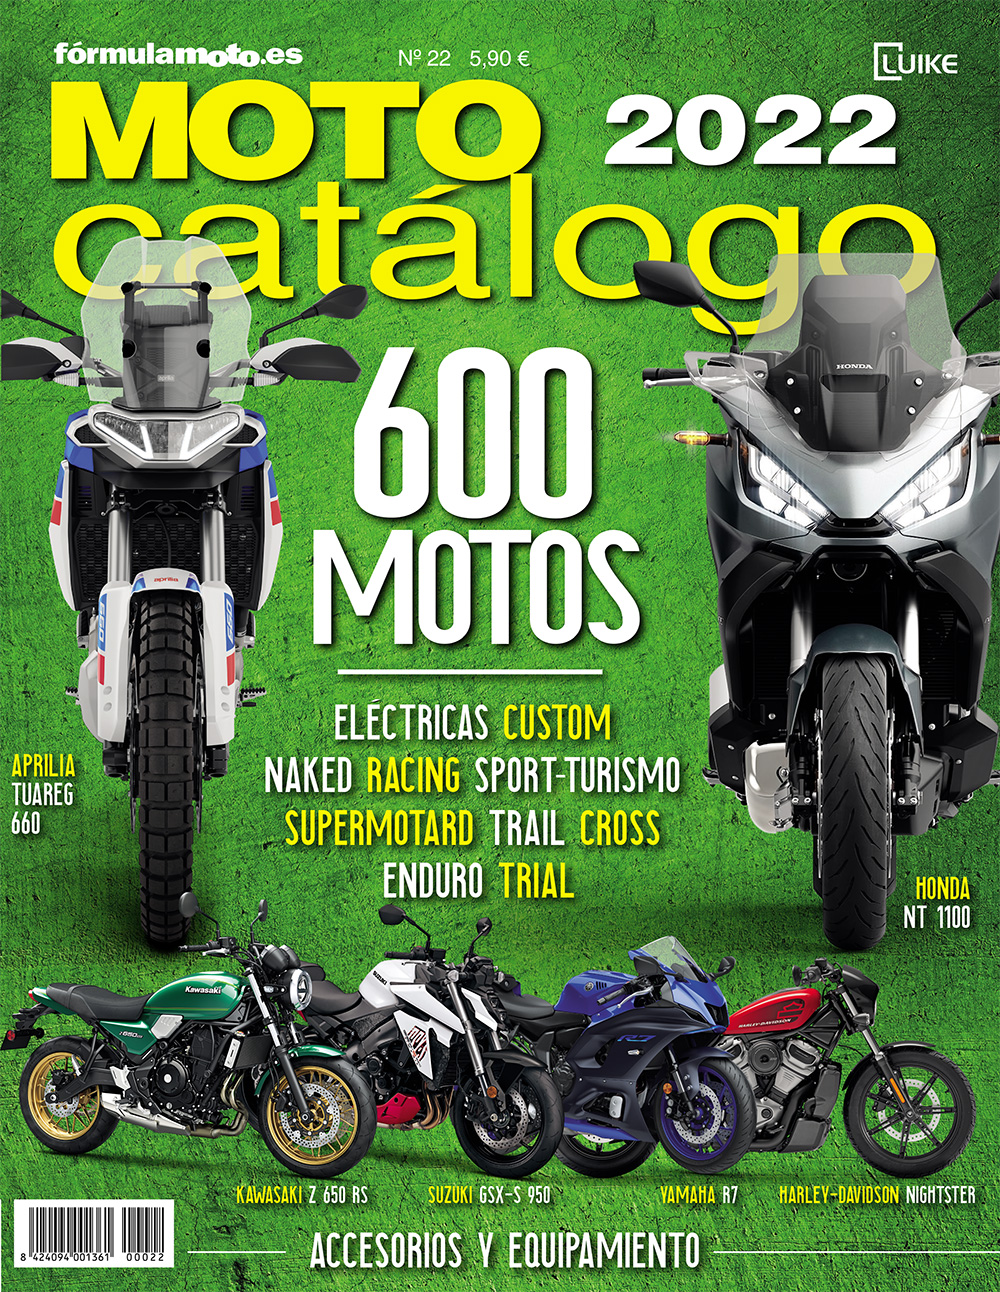 Motocatálogo 2022